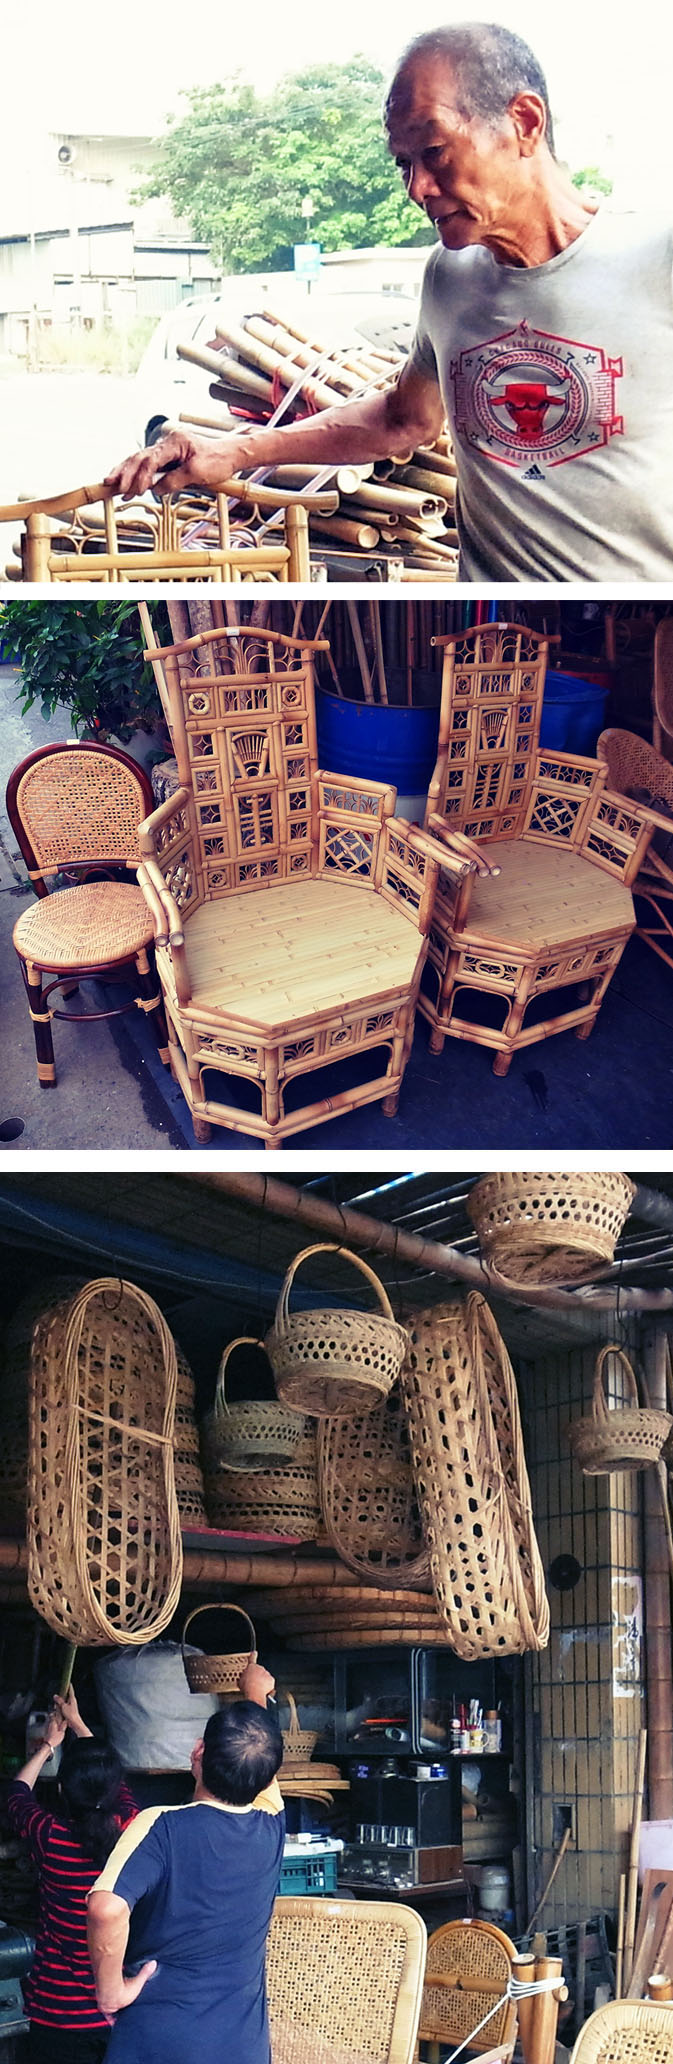 上：張玉龍師傅。中：造型繁複、作工精緻的竹編傢俱。下：從嬰兒搖籃到提籃、椅子，店裡一應俱全。（蔡旻珊·攝影）